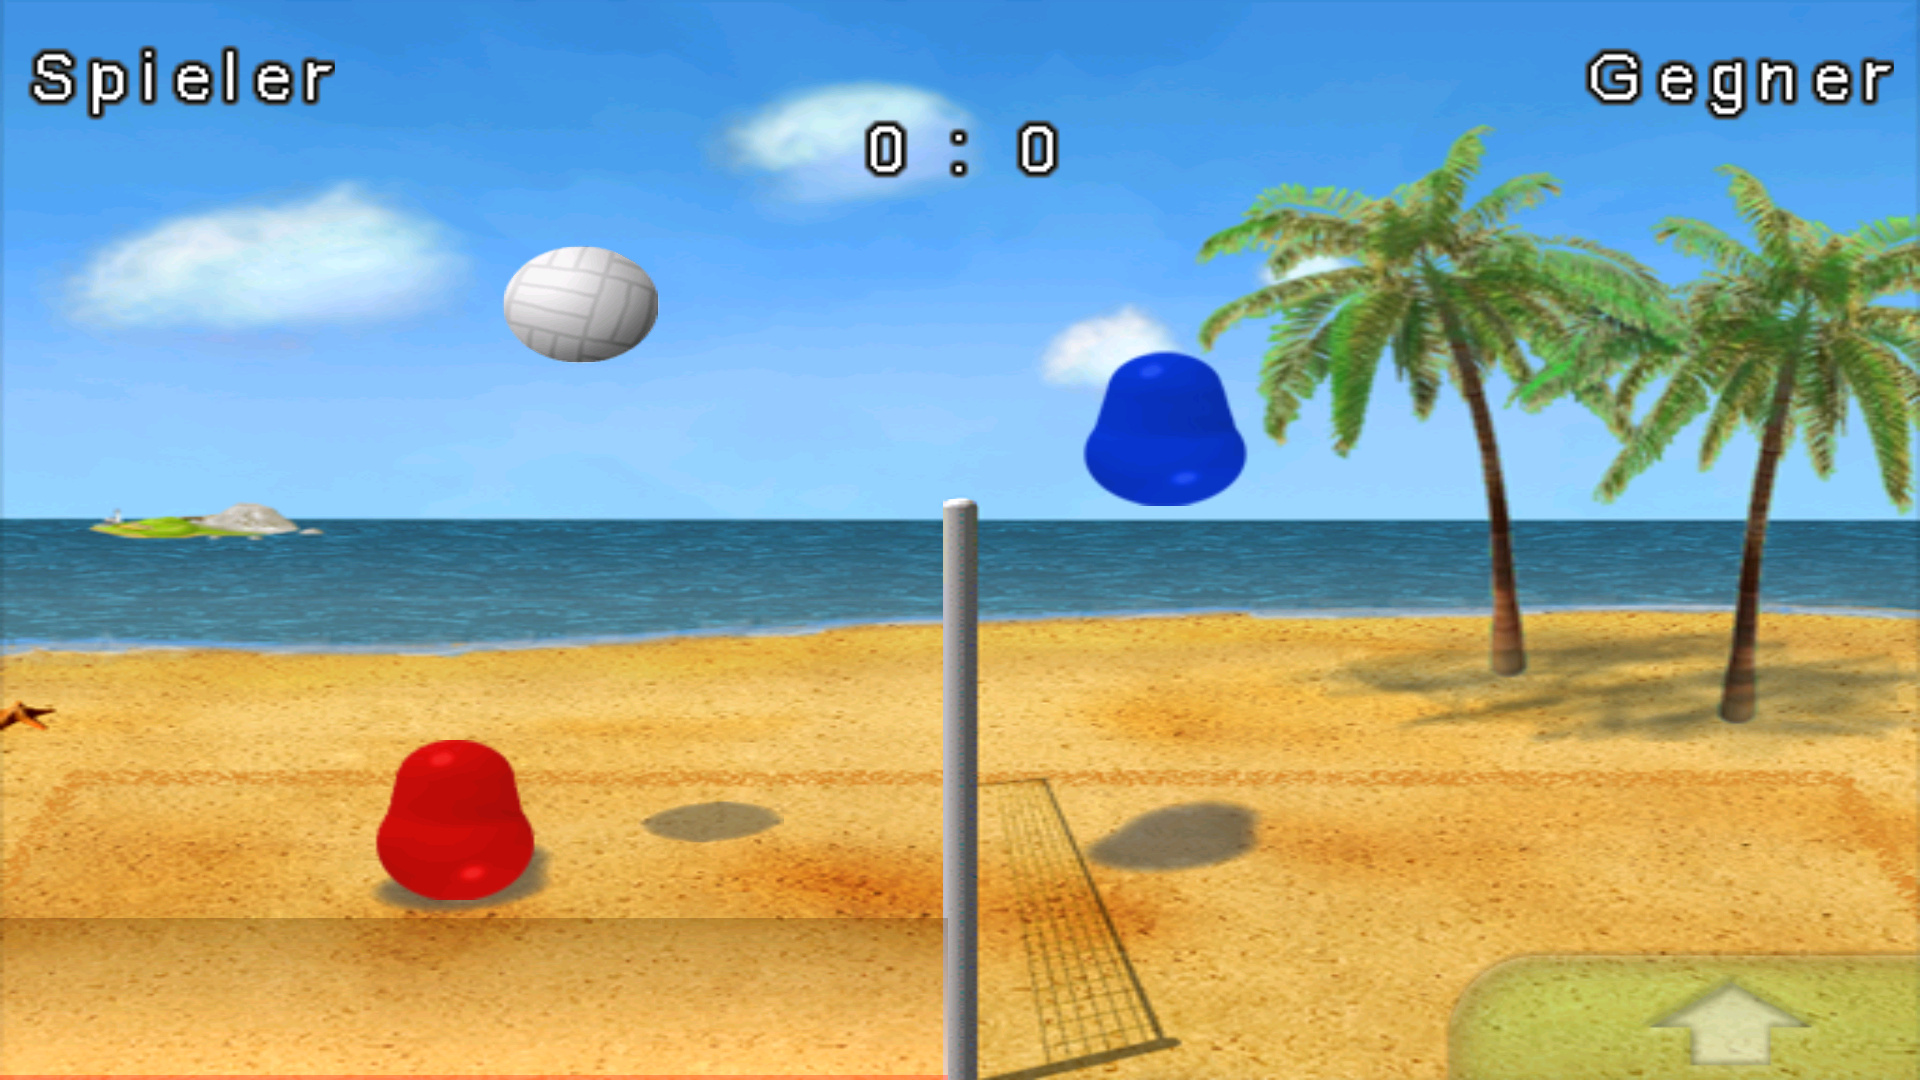 Игра мяч на 2 игрока. Игра пляжный волейбол желе. Игра Blobby Volleyball. Blobby Volley 2. Игра волейбол желе.